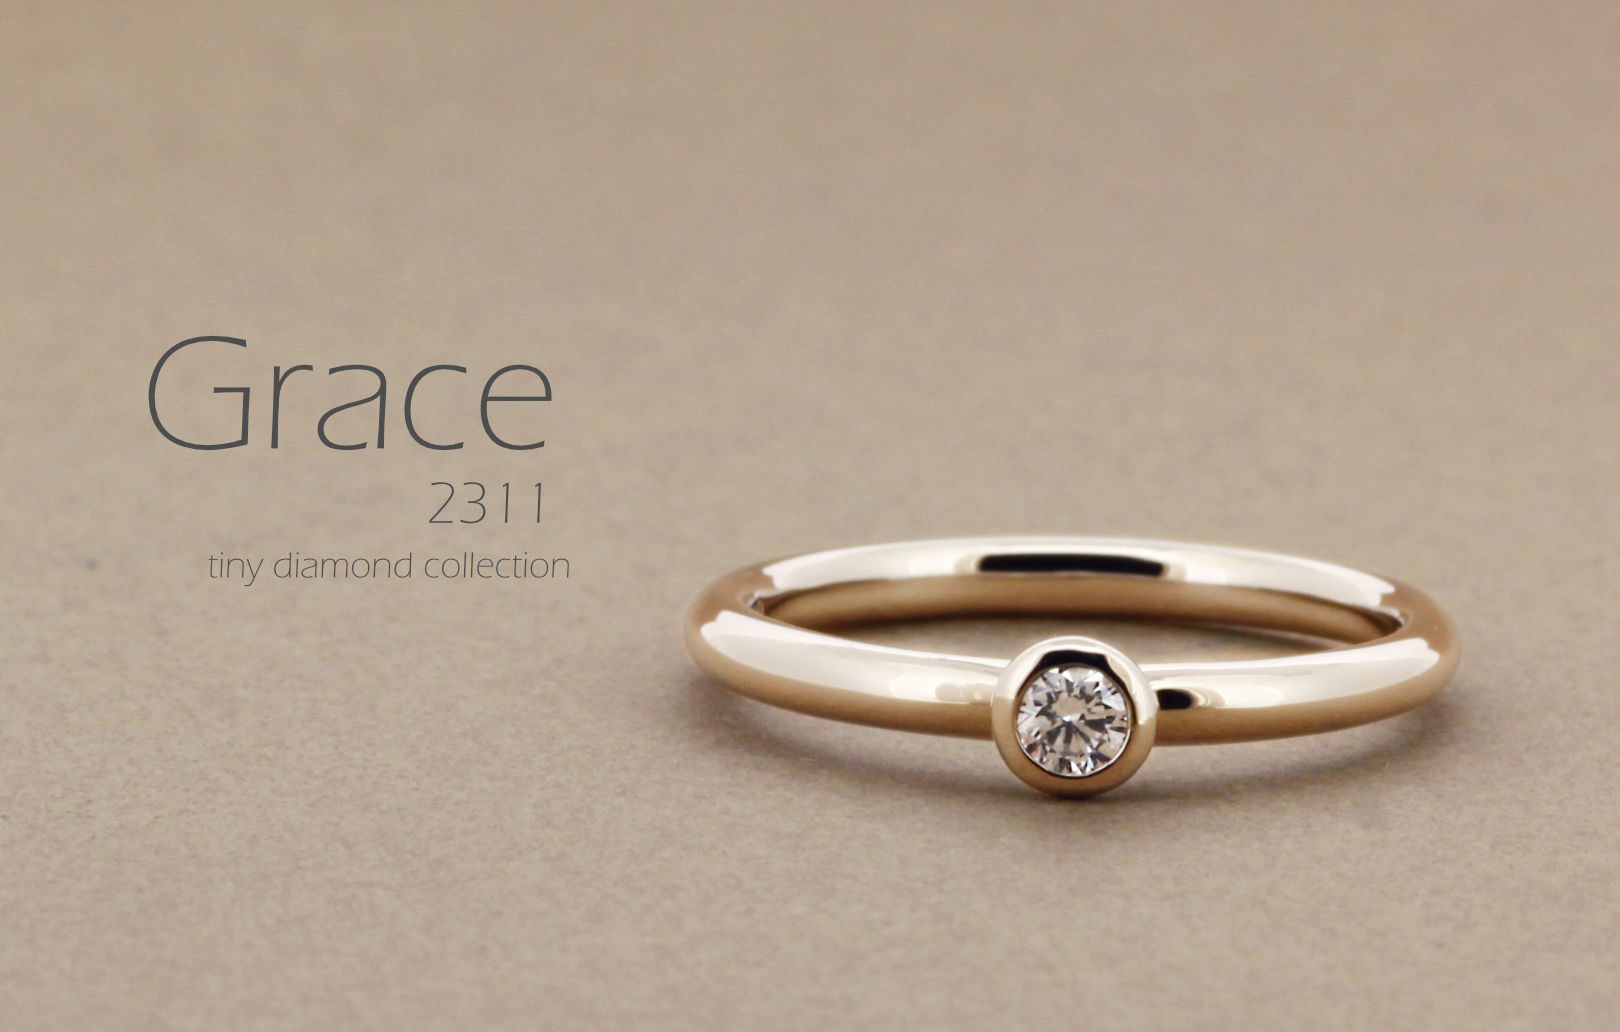 「Grace」という名前が付いた、シンプルで丸みのあるアームに0.1ctのダイヤモンドをフクリンで留めた指輪の詳細ページトップ